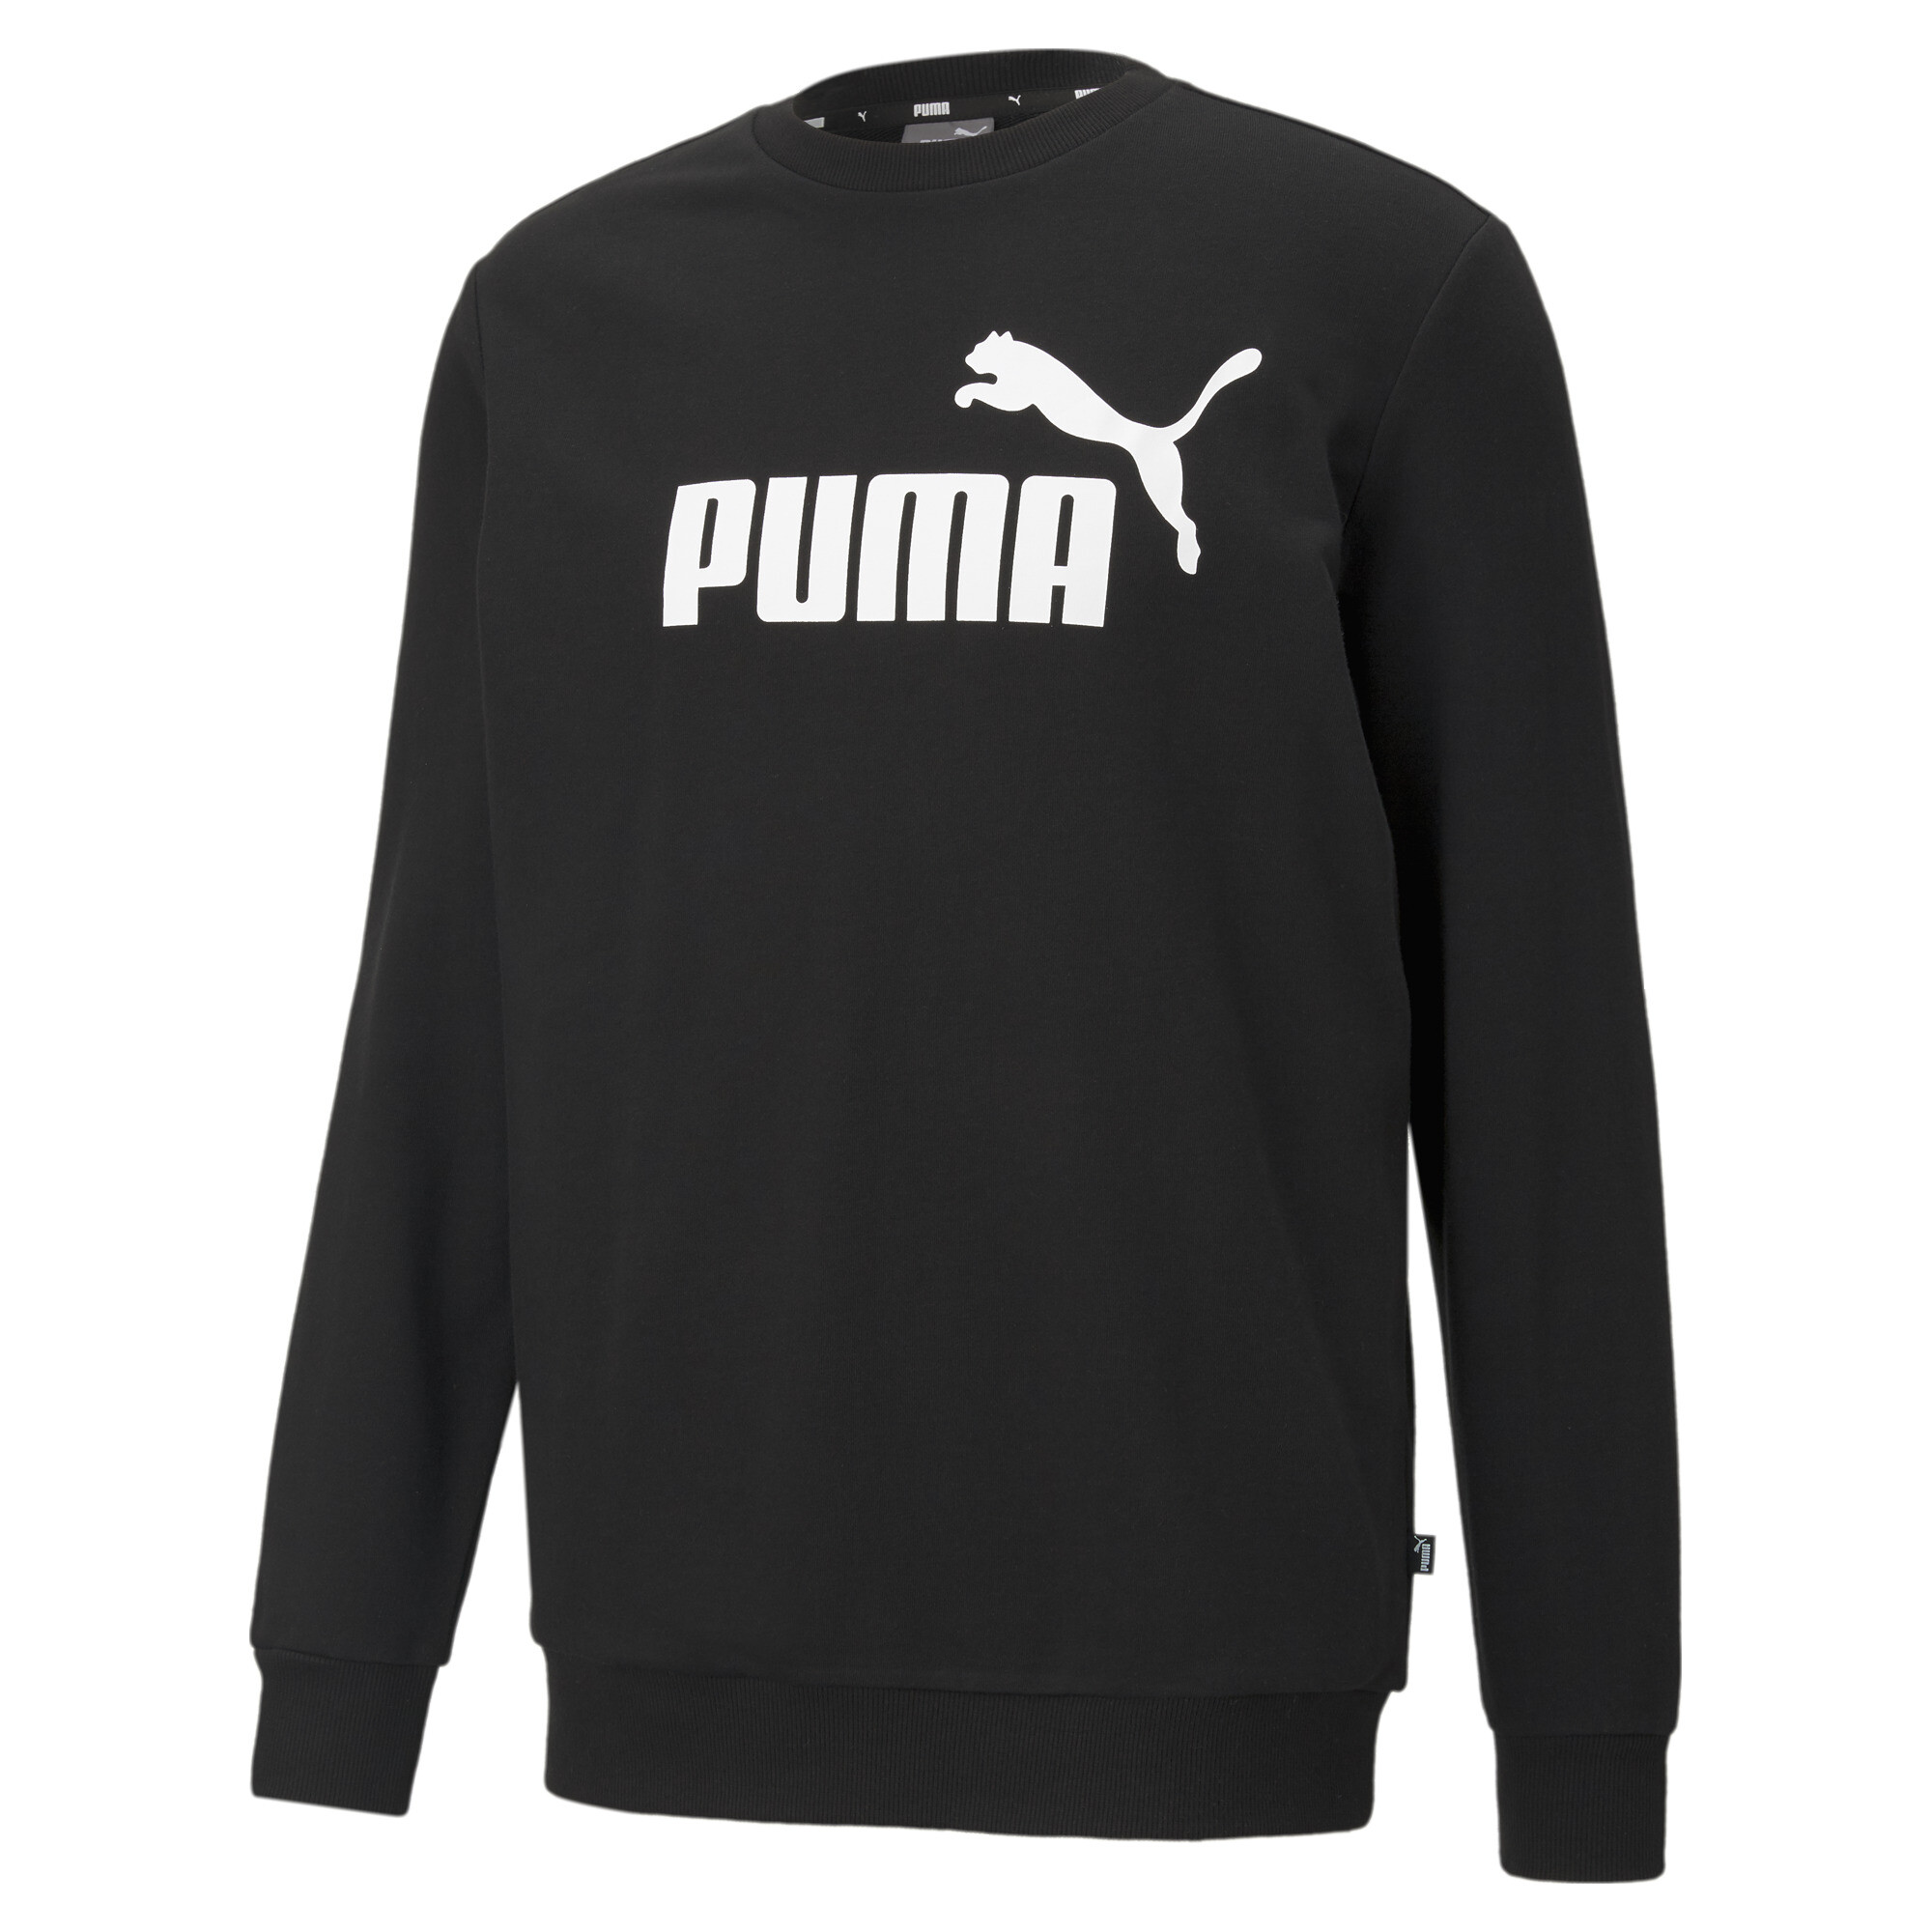  プーマ メンズ ESS ビッグロゴ クルー スウェット メンズ Puma Black ｜PUMA.com